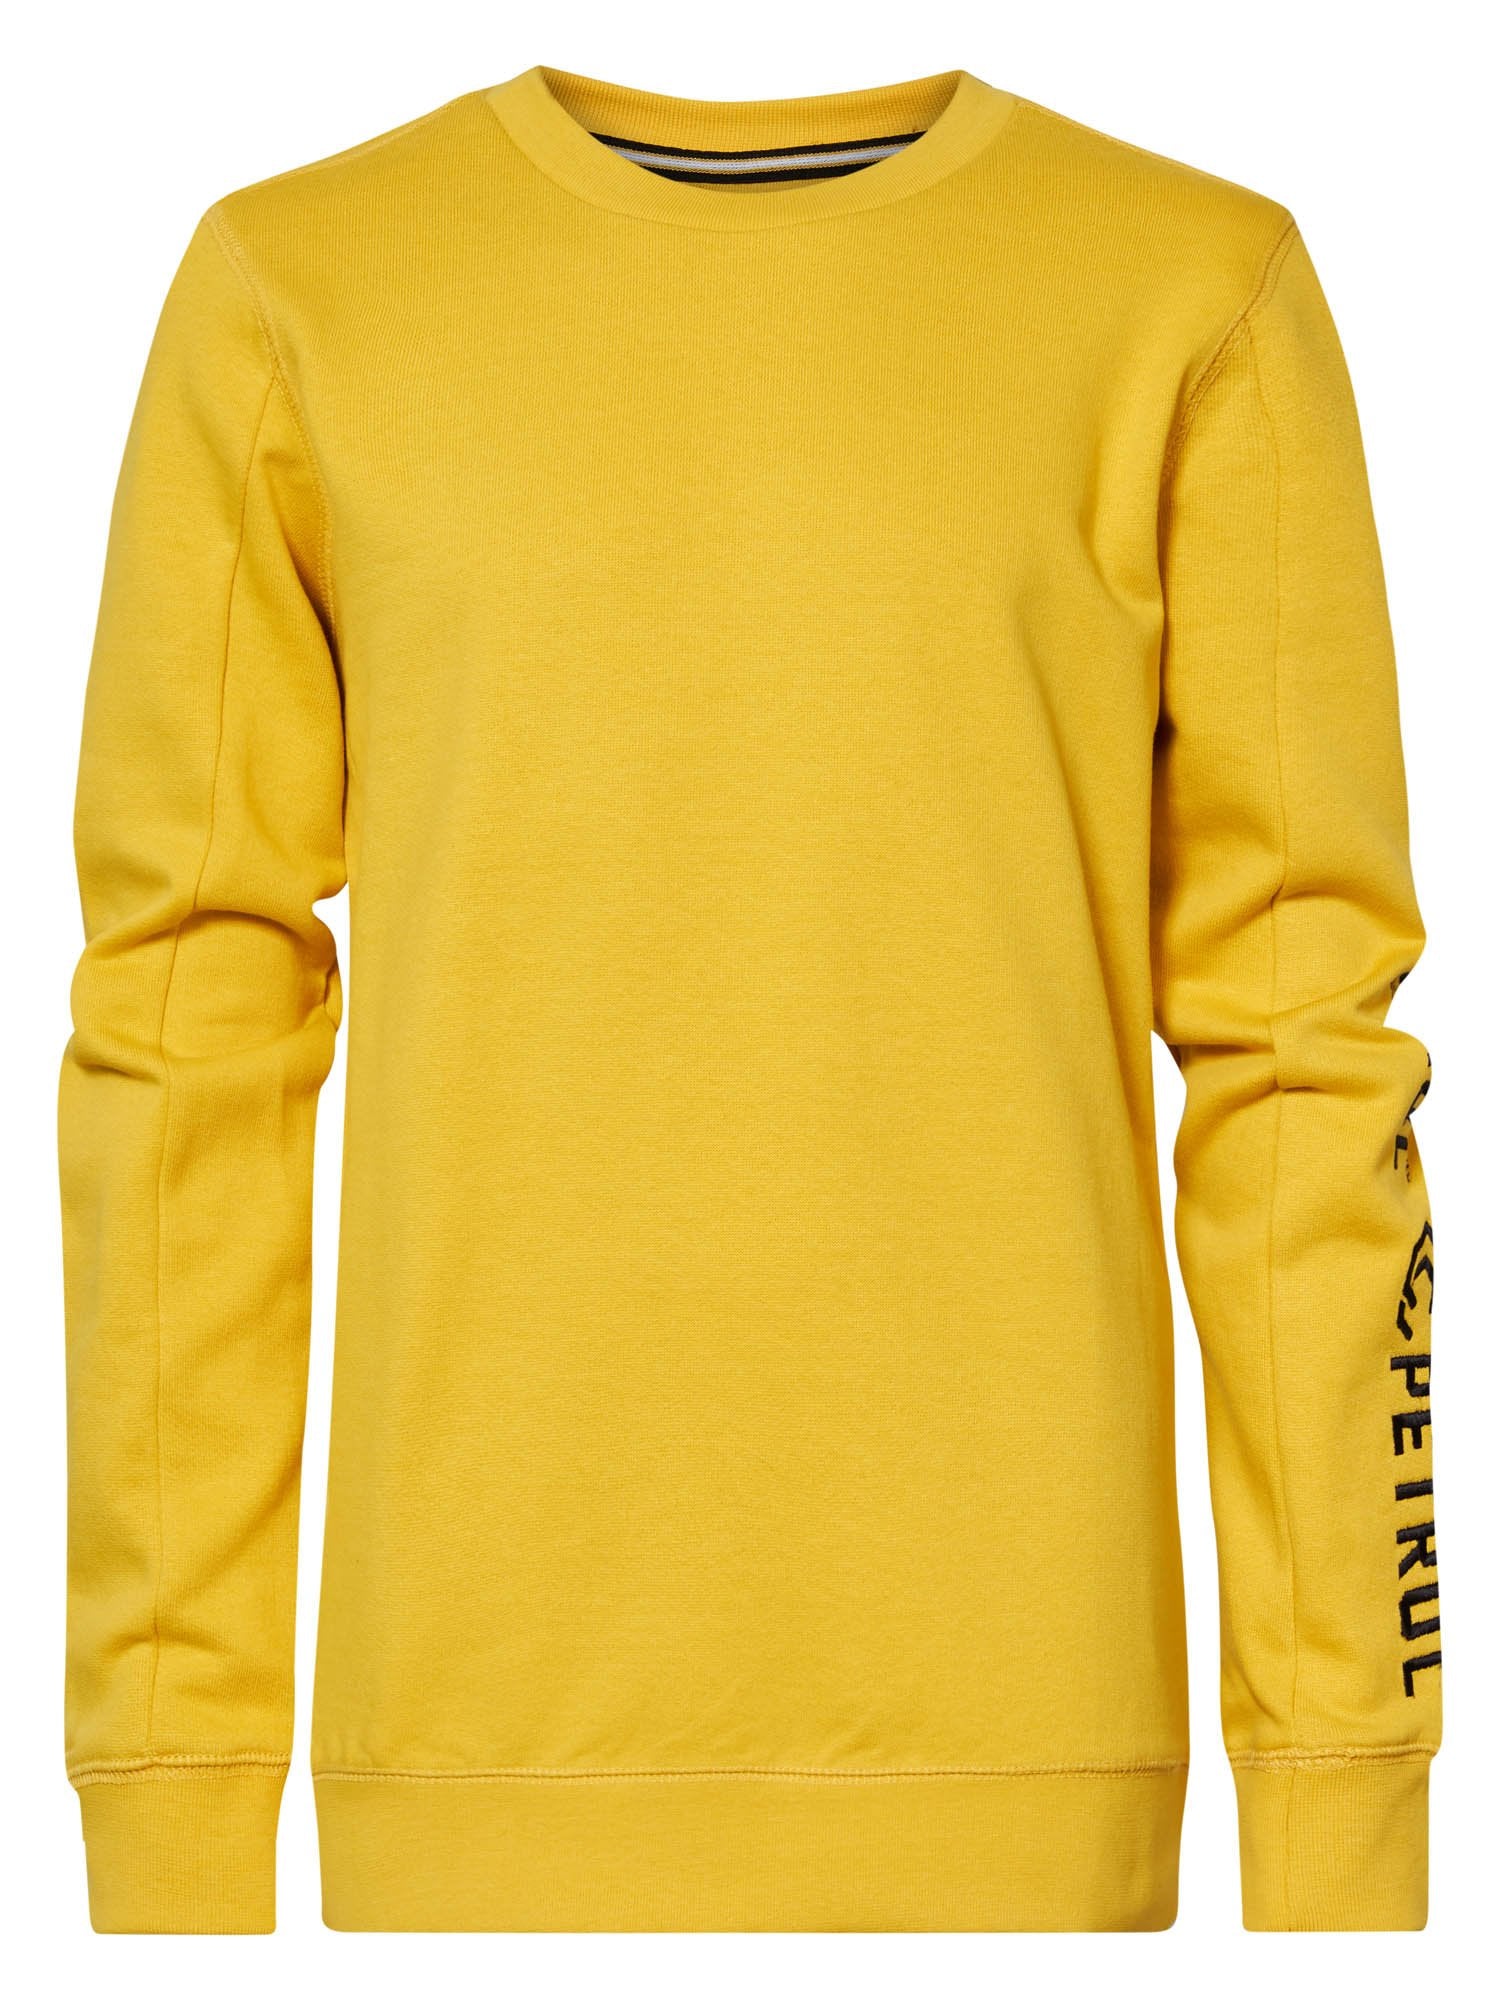 Jongens Sweater Crewneck with Text on Sleeve van Petrol in de kleur Antique Yellow in maat 164.